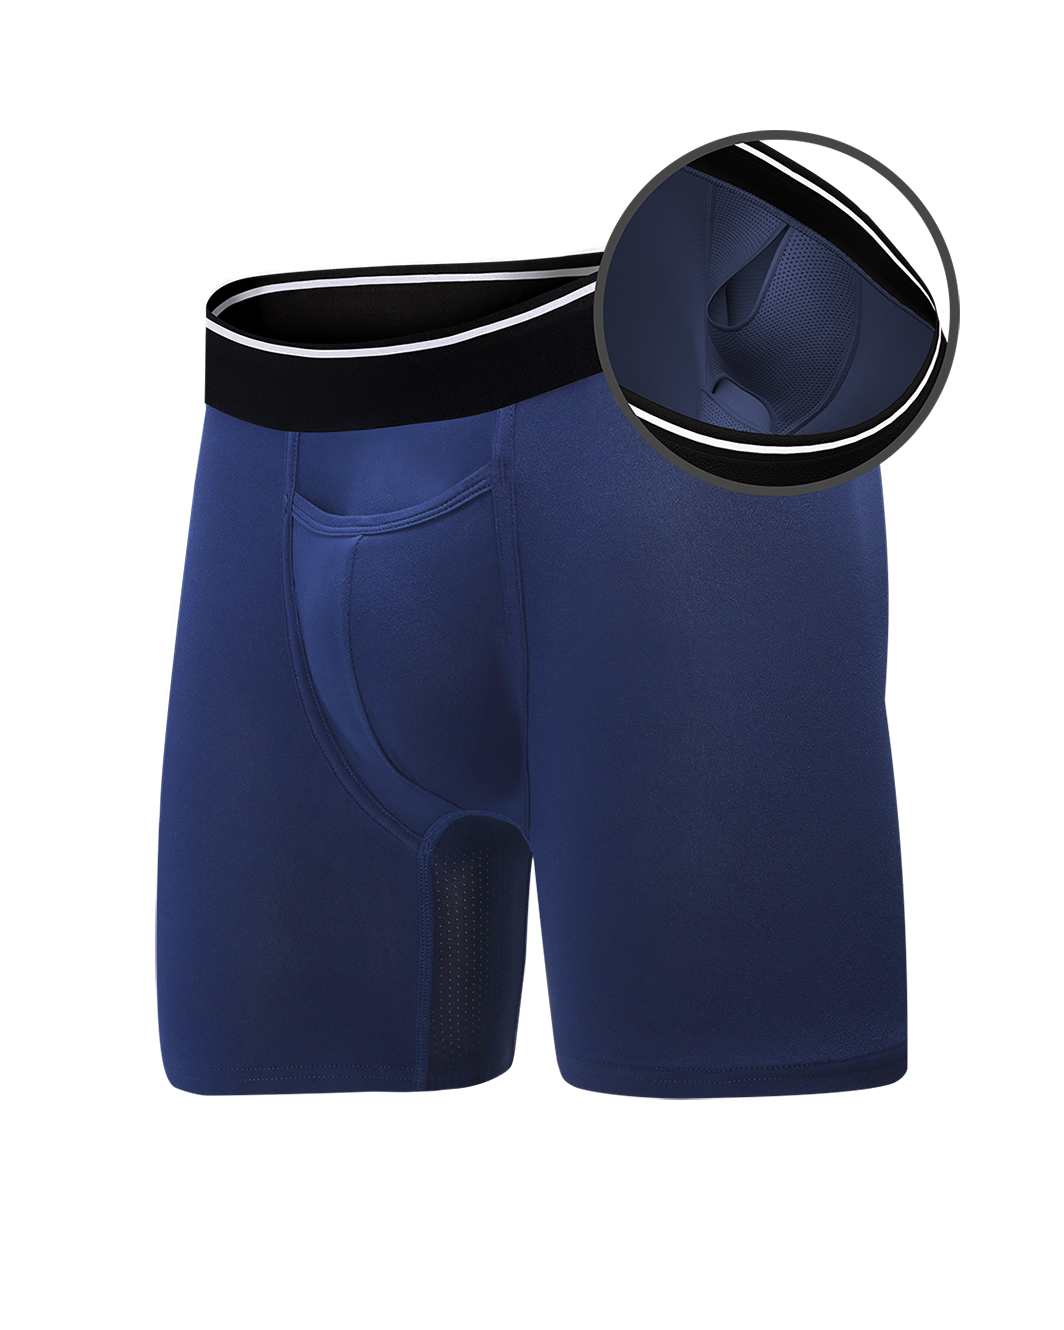 Jockey Men's Underwear Organic Cotton Stretch 6.5 Boxer Brief - 3  Pack 36.00